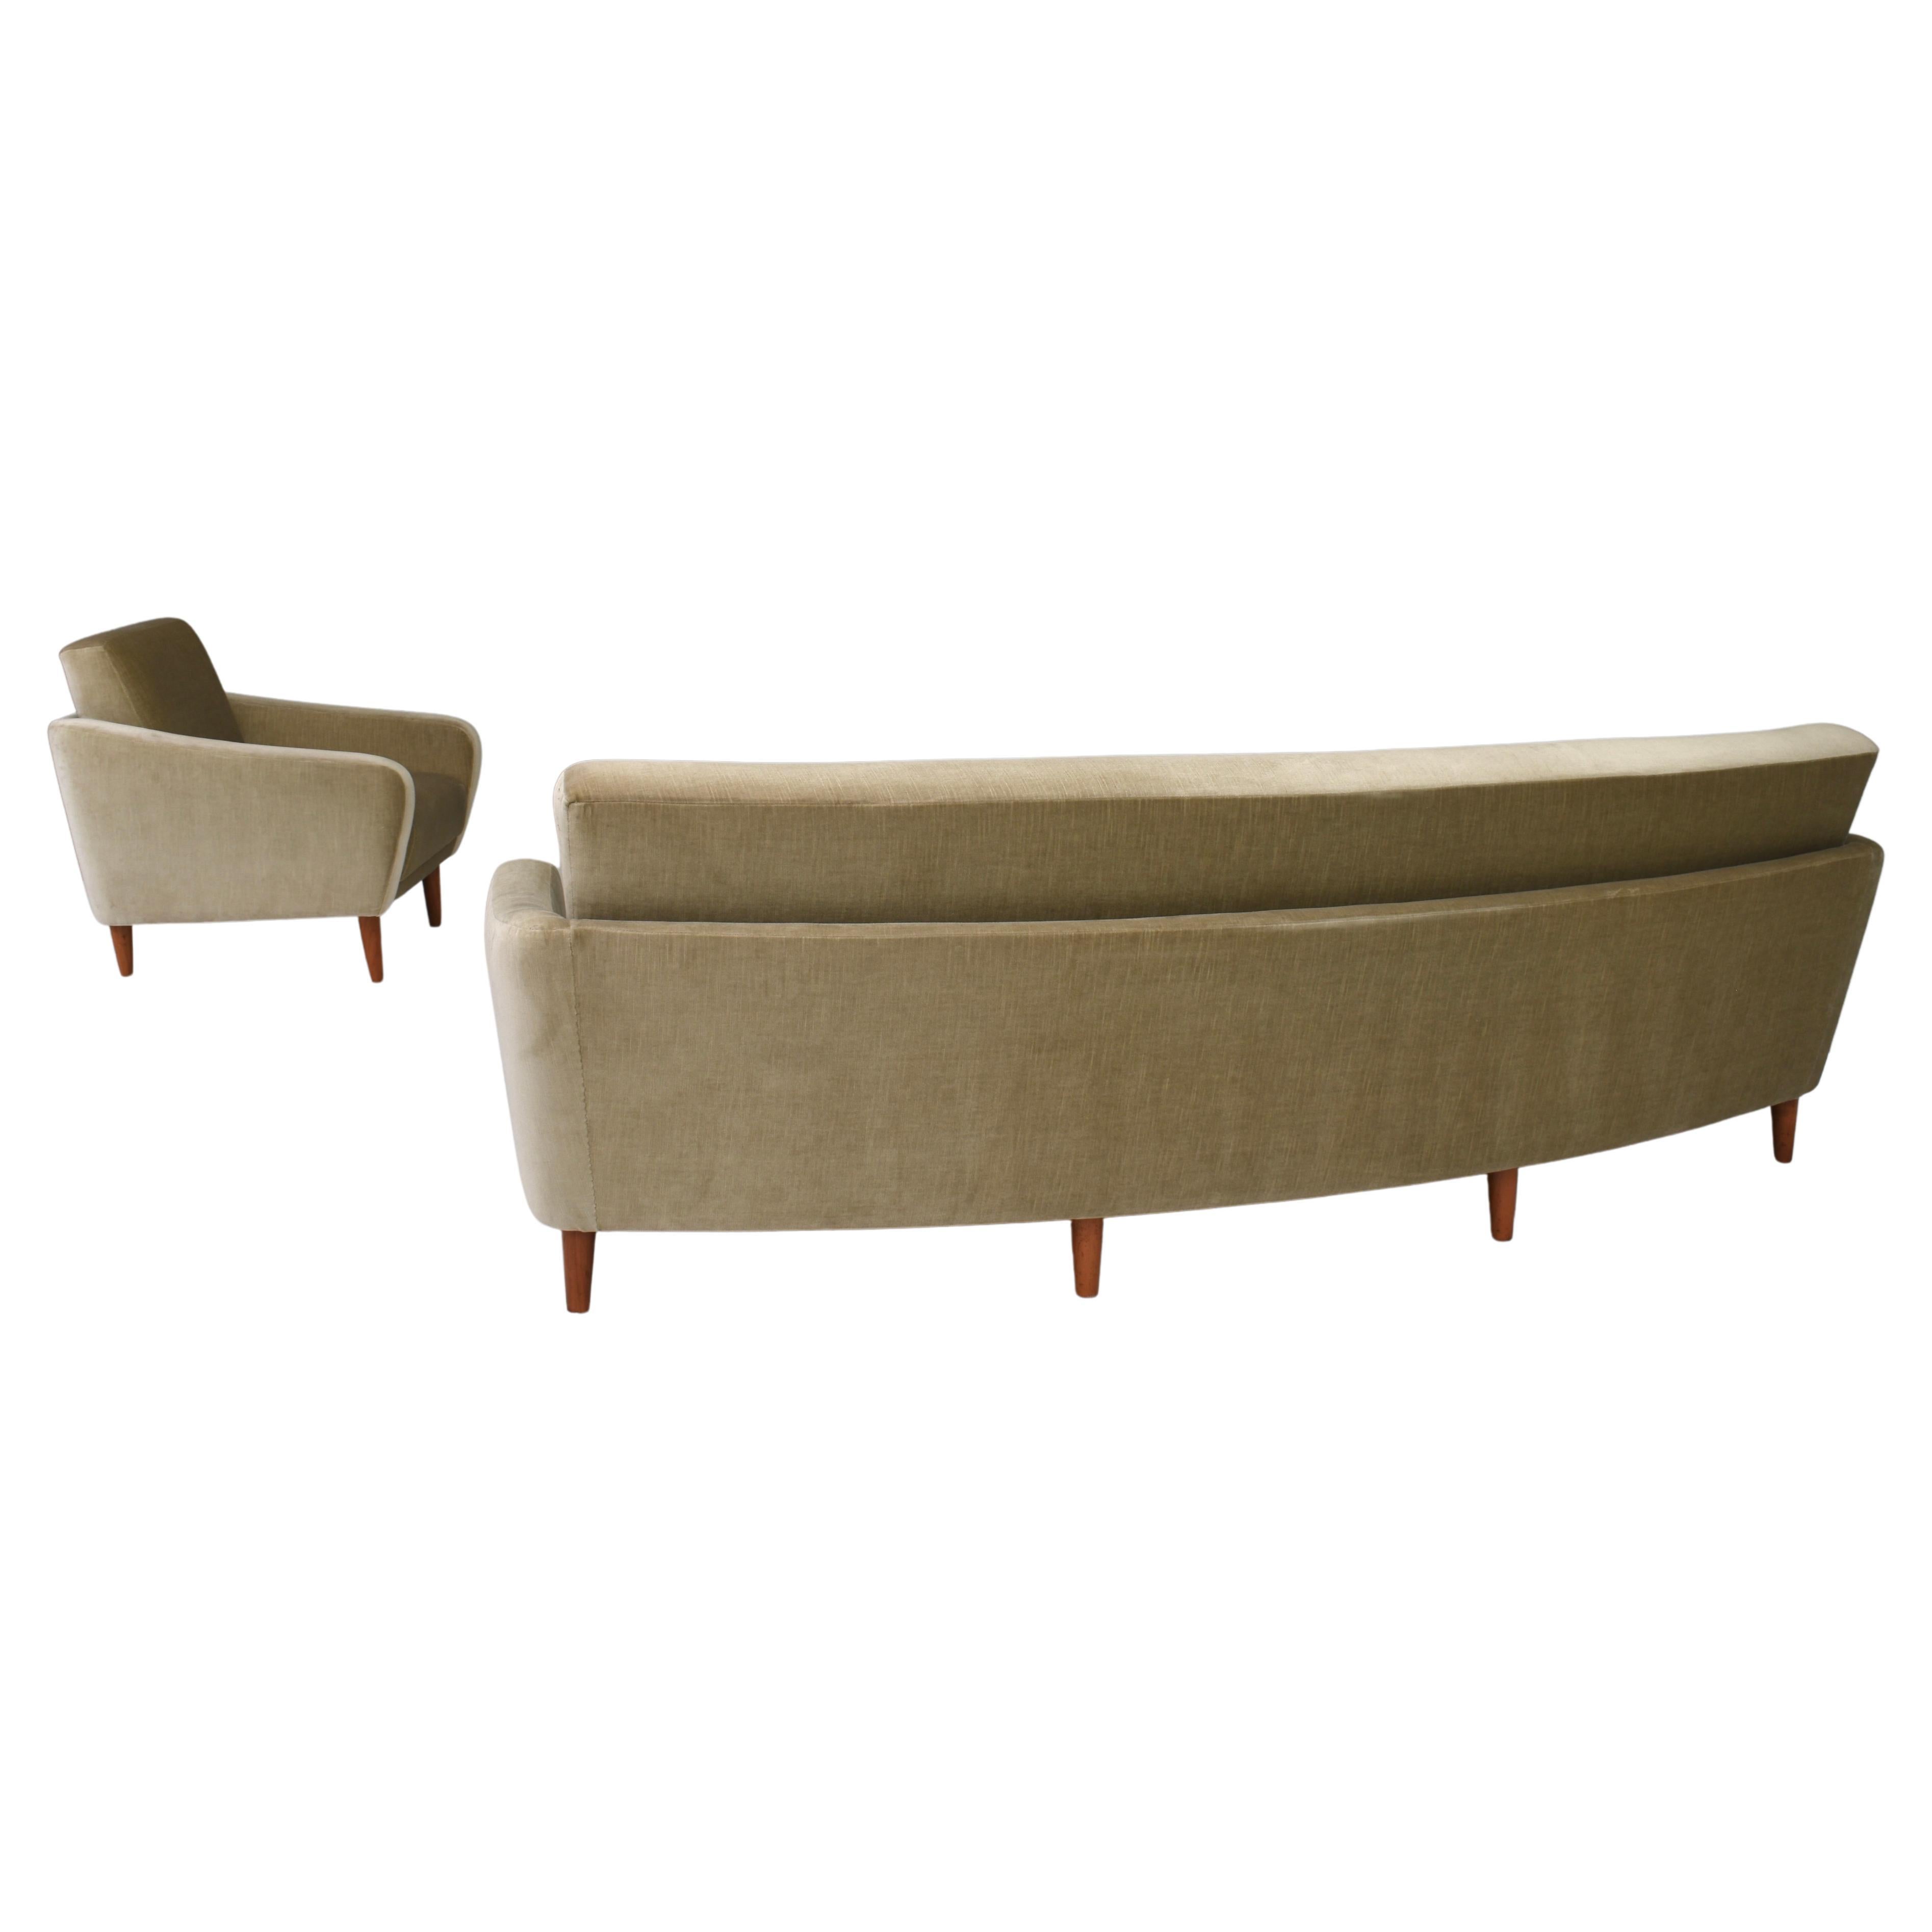 Geschwungenes dänisches Sofa und Armlehnstuhl mit original Mohair-Samtstoff und Teakholzbeinen, um 1950.
Der Mohairstoff ist noch original und in sehr gutem Zustand mit geringen Alters- und Gebrauchsspuren. Alle Polster sind aus demselben